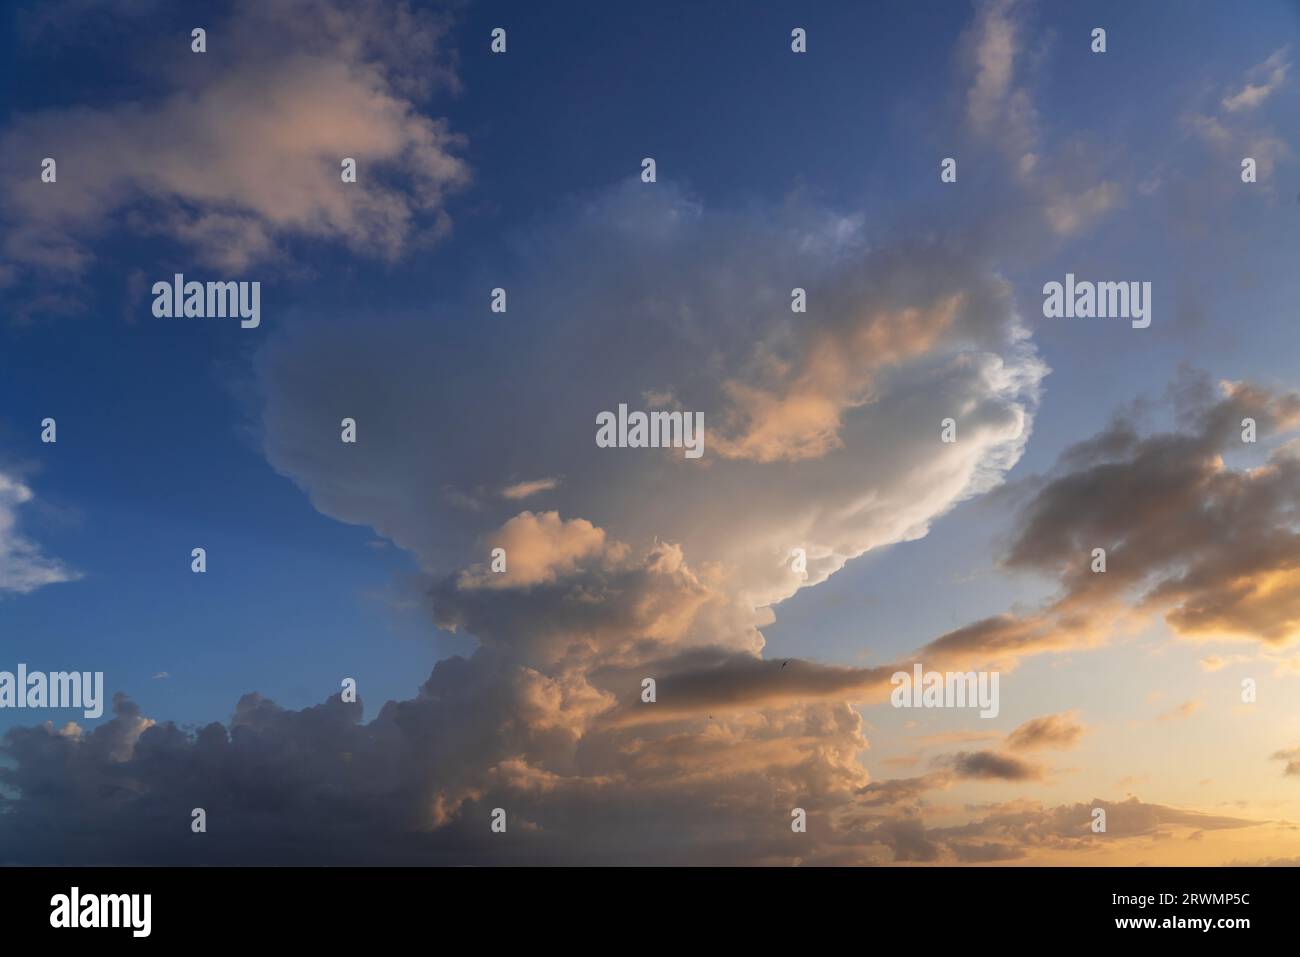 Nuages d'orage dans le ciel au coucher du soleil texture superposition d'arrière-plan. Image cumulonimbus dramatique. Photographie haute résolution parfaite pour le remplacement du ciel Banque D'Images